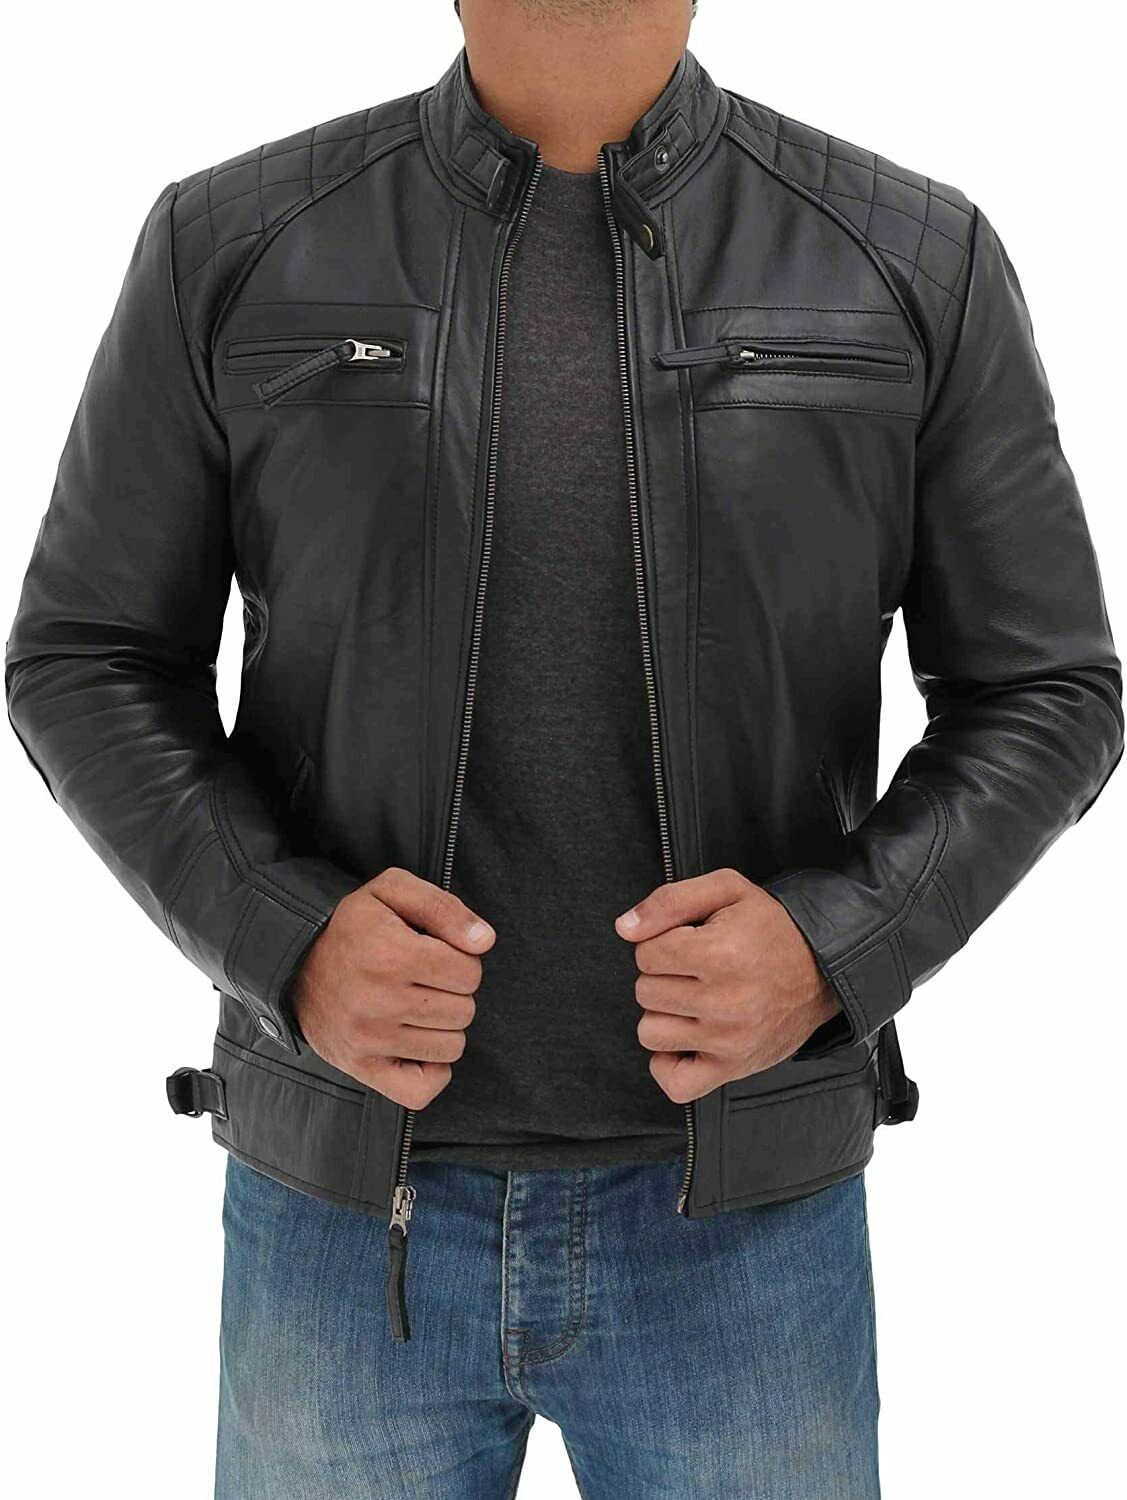 Spine Spark Men's Black Trendy Slim Fit Biker Leather Jacket